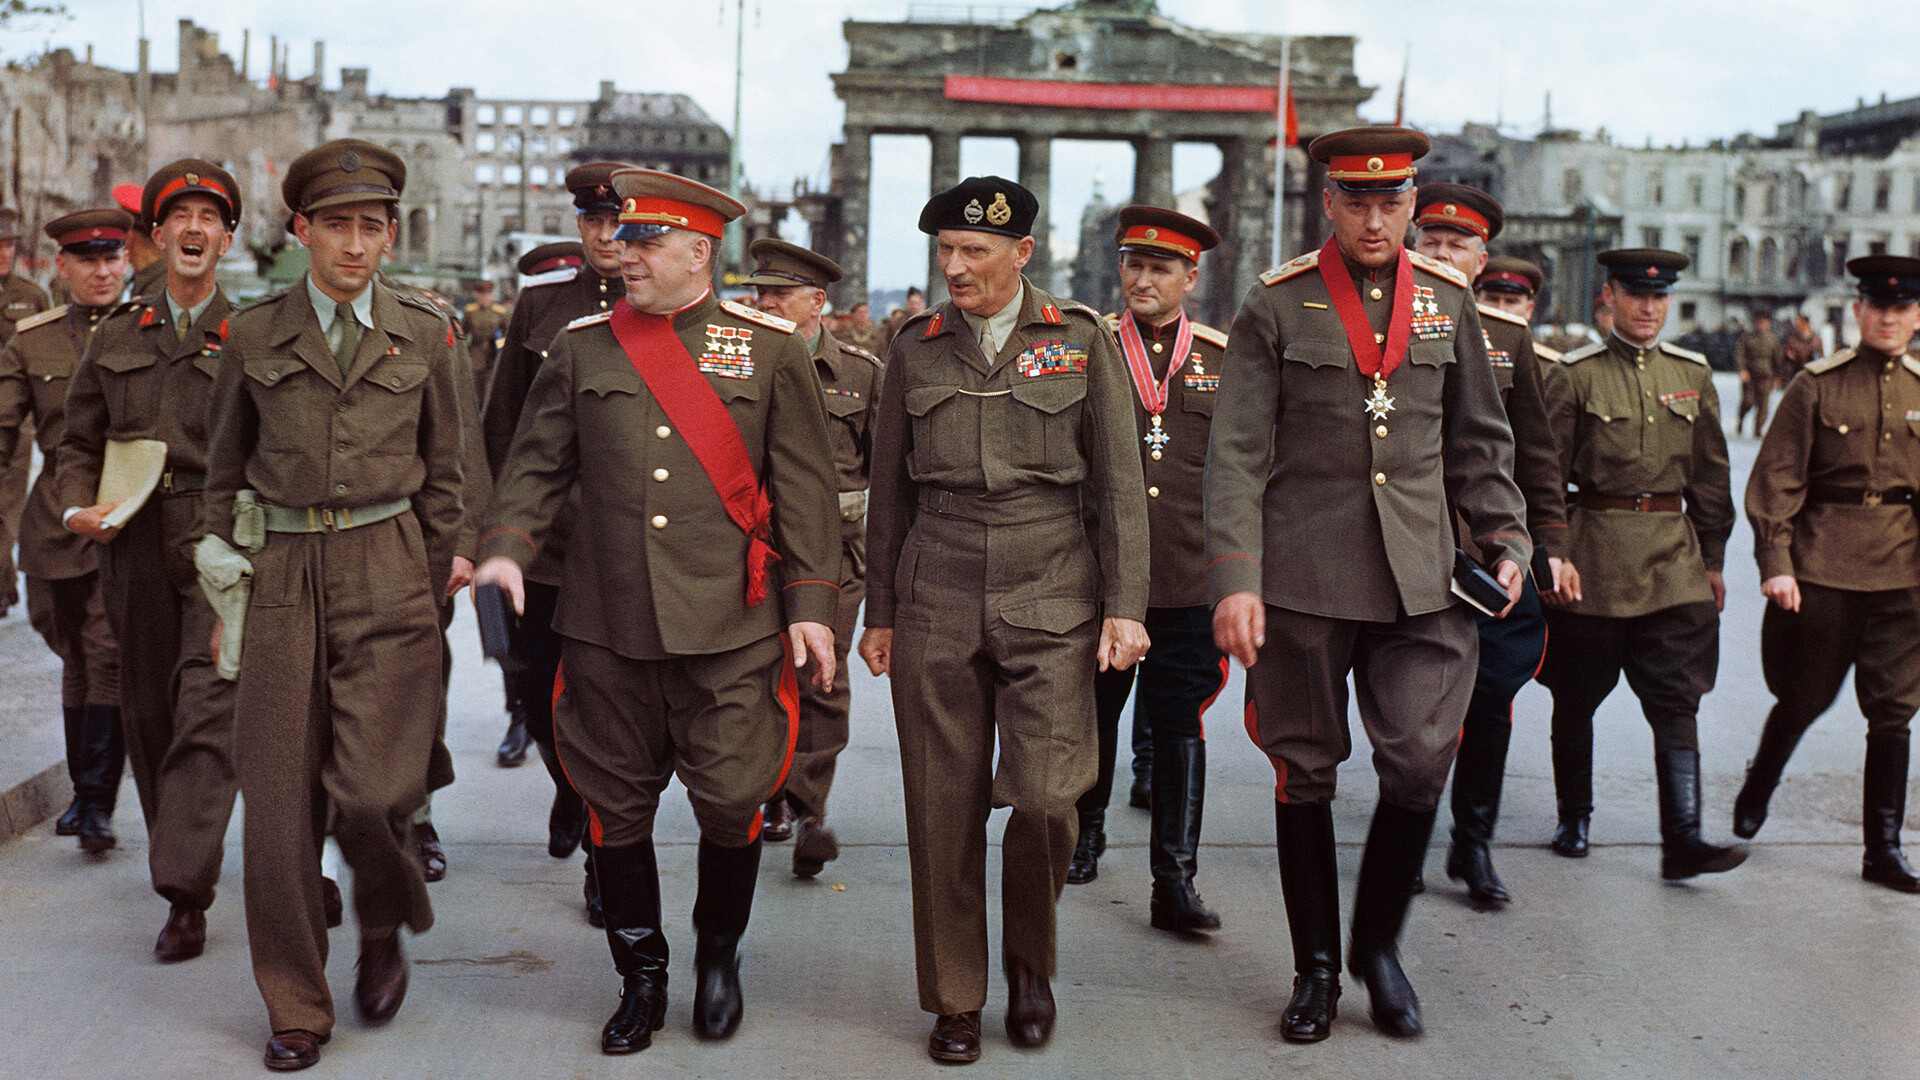 Marschall Georgij Schukow, Feldmarschall Bernard Montgomery und Marschall Konstantin Rokossowskij in Berlin, 12. Juni 1945.